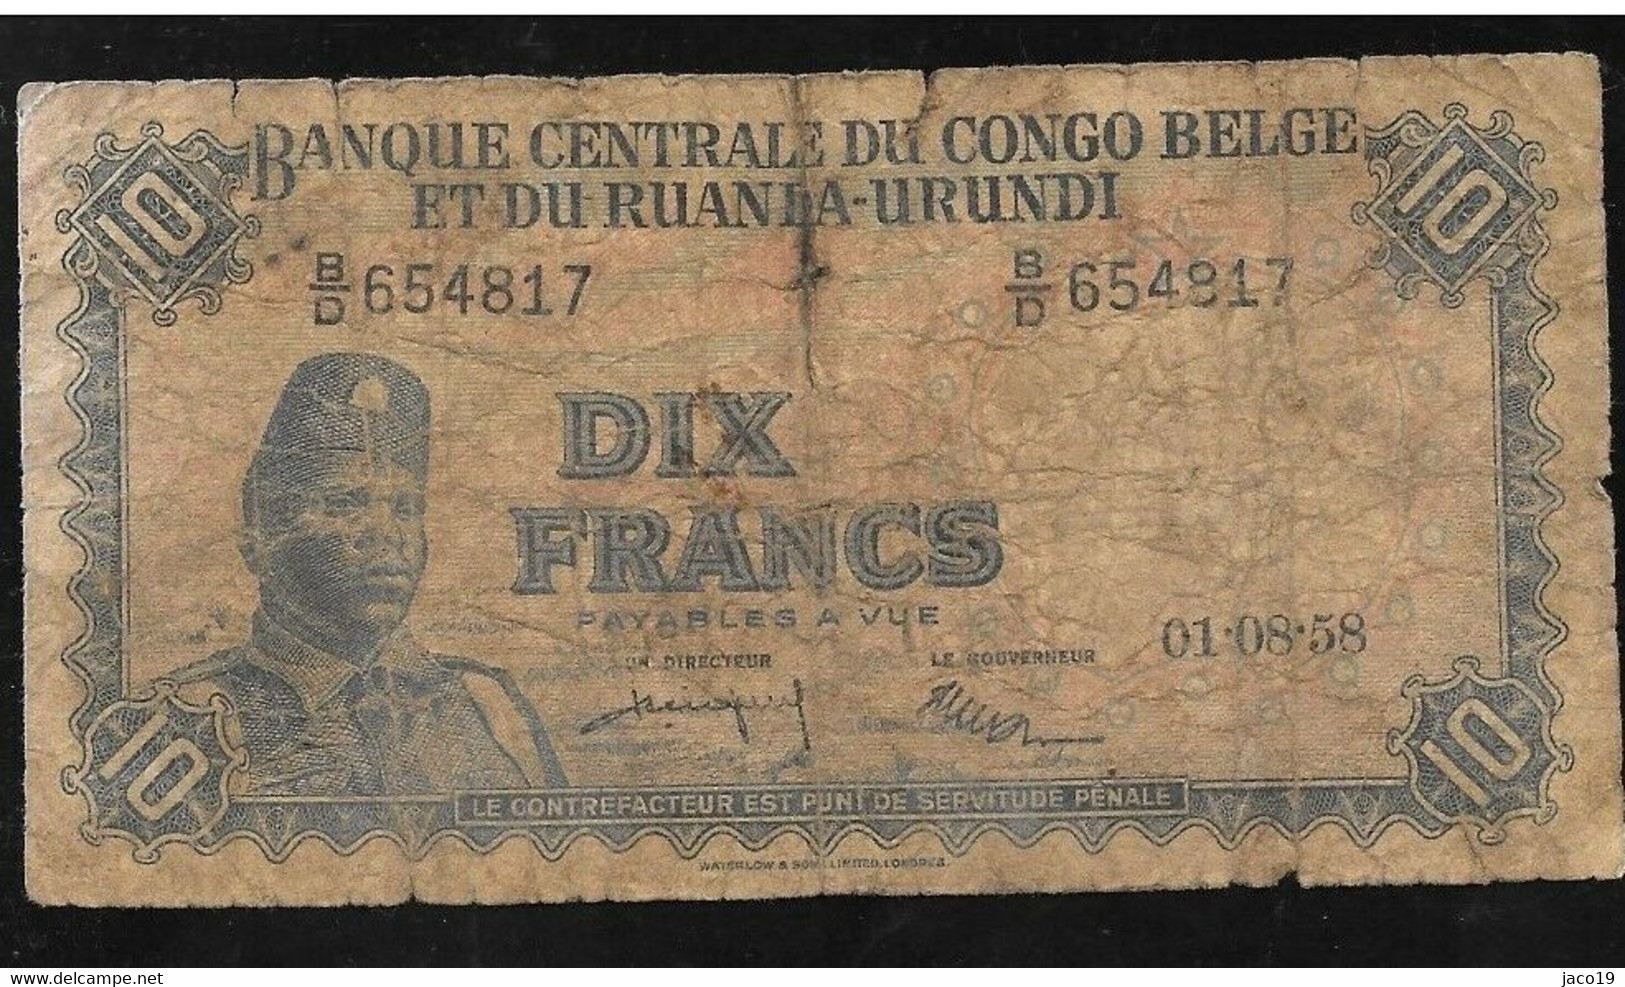 10 Francs -congo-belge Type "1955" 01-08-58 - Bank Van Belgisch Kongo